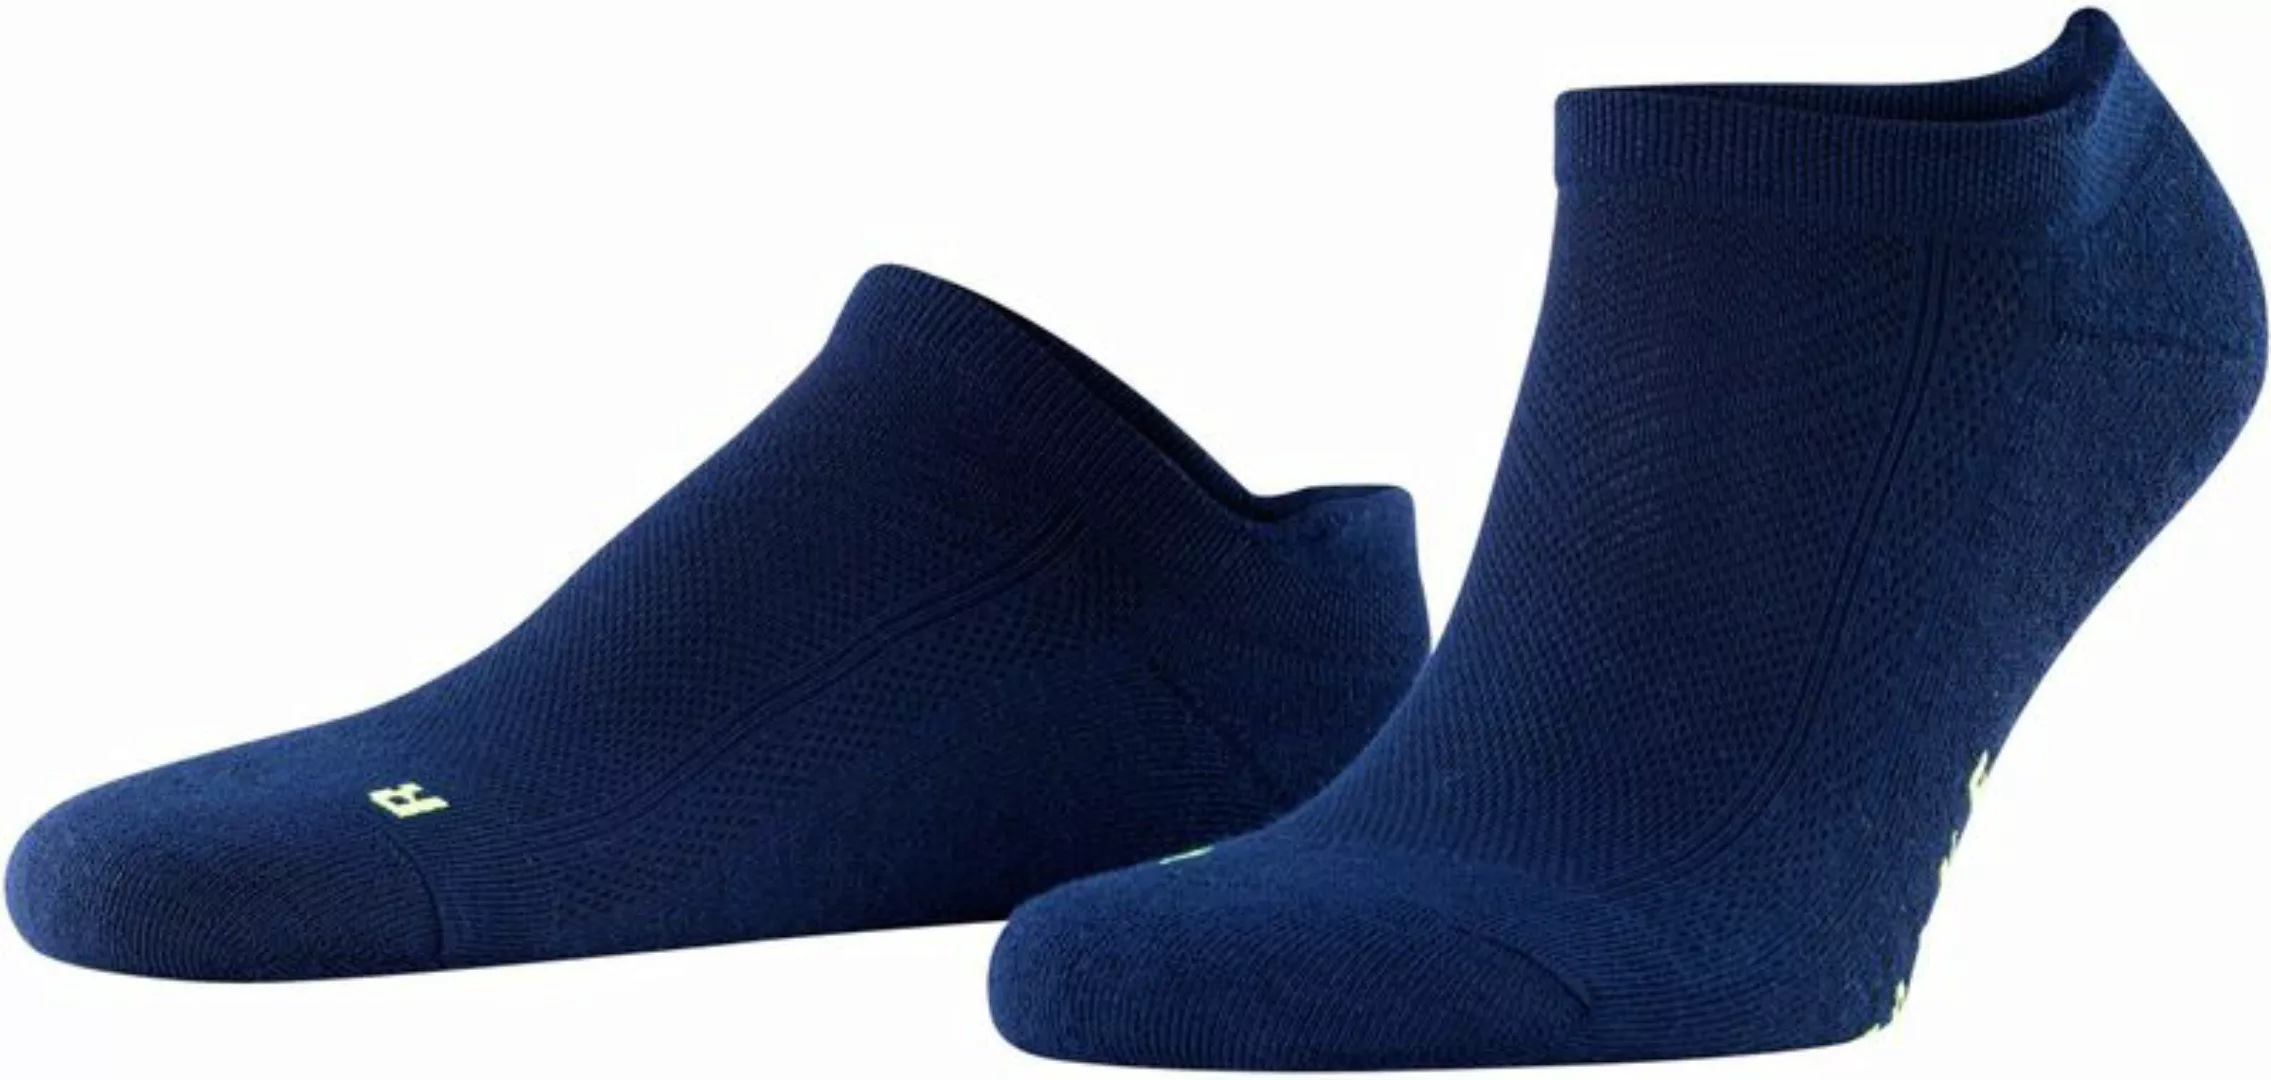 FALKE Cool Kick Trainer Socken Navy - Größe 42-43 günstig online kaufen